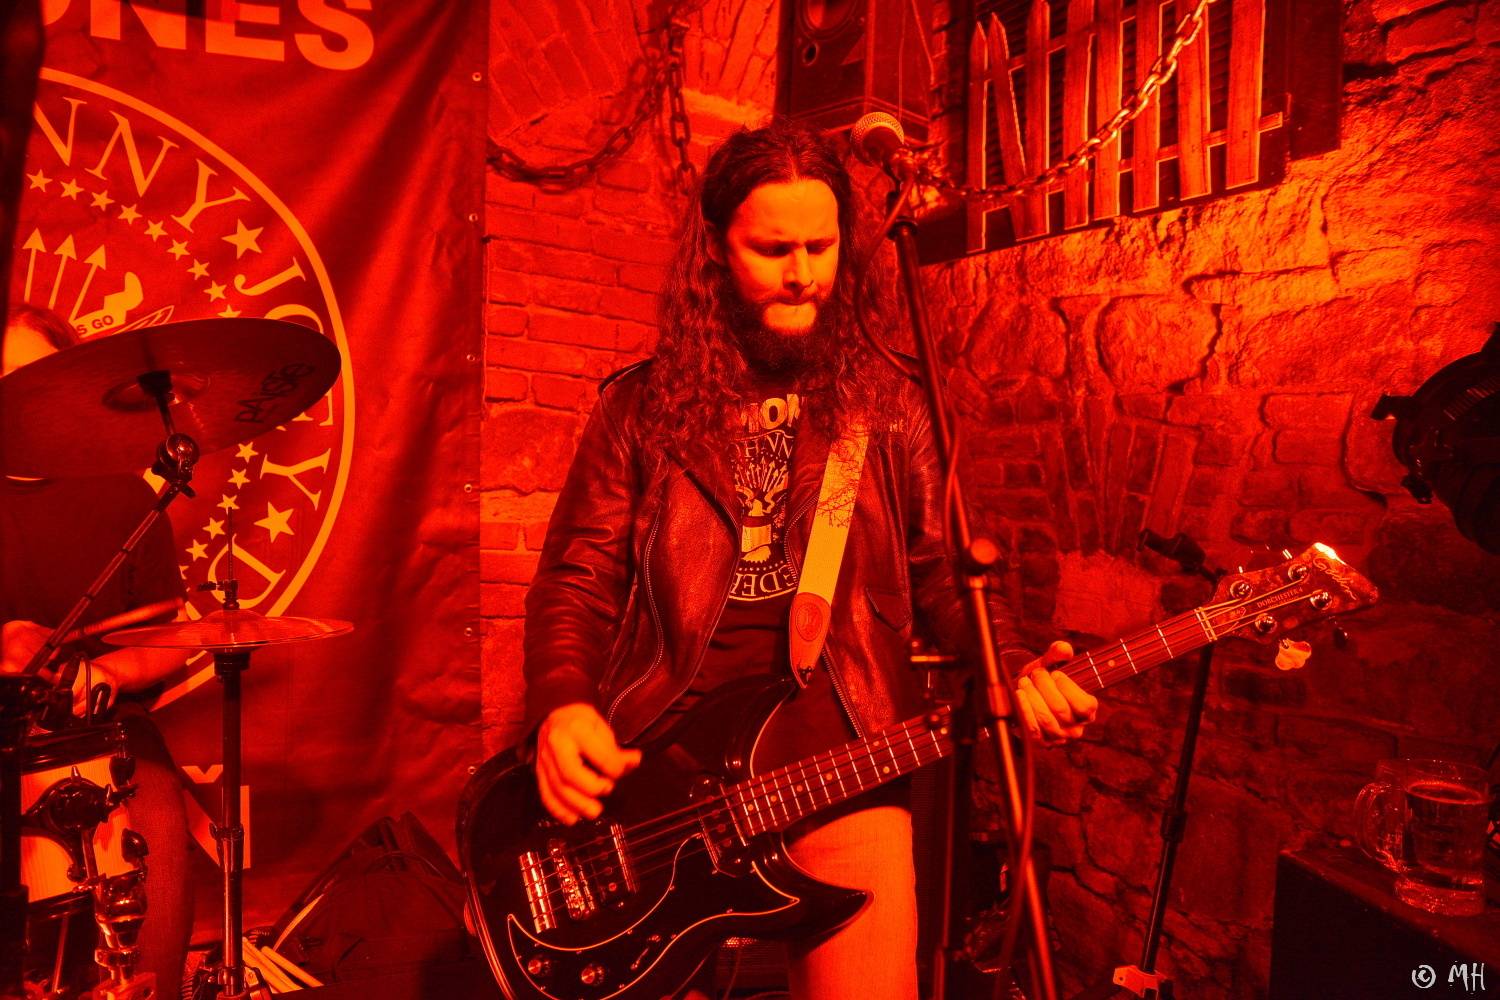 Ani Lemmy by se za jejich výkon nestyděl. Tribute band Motörreptile-Motörhead ovládl plzeňský Parlament